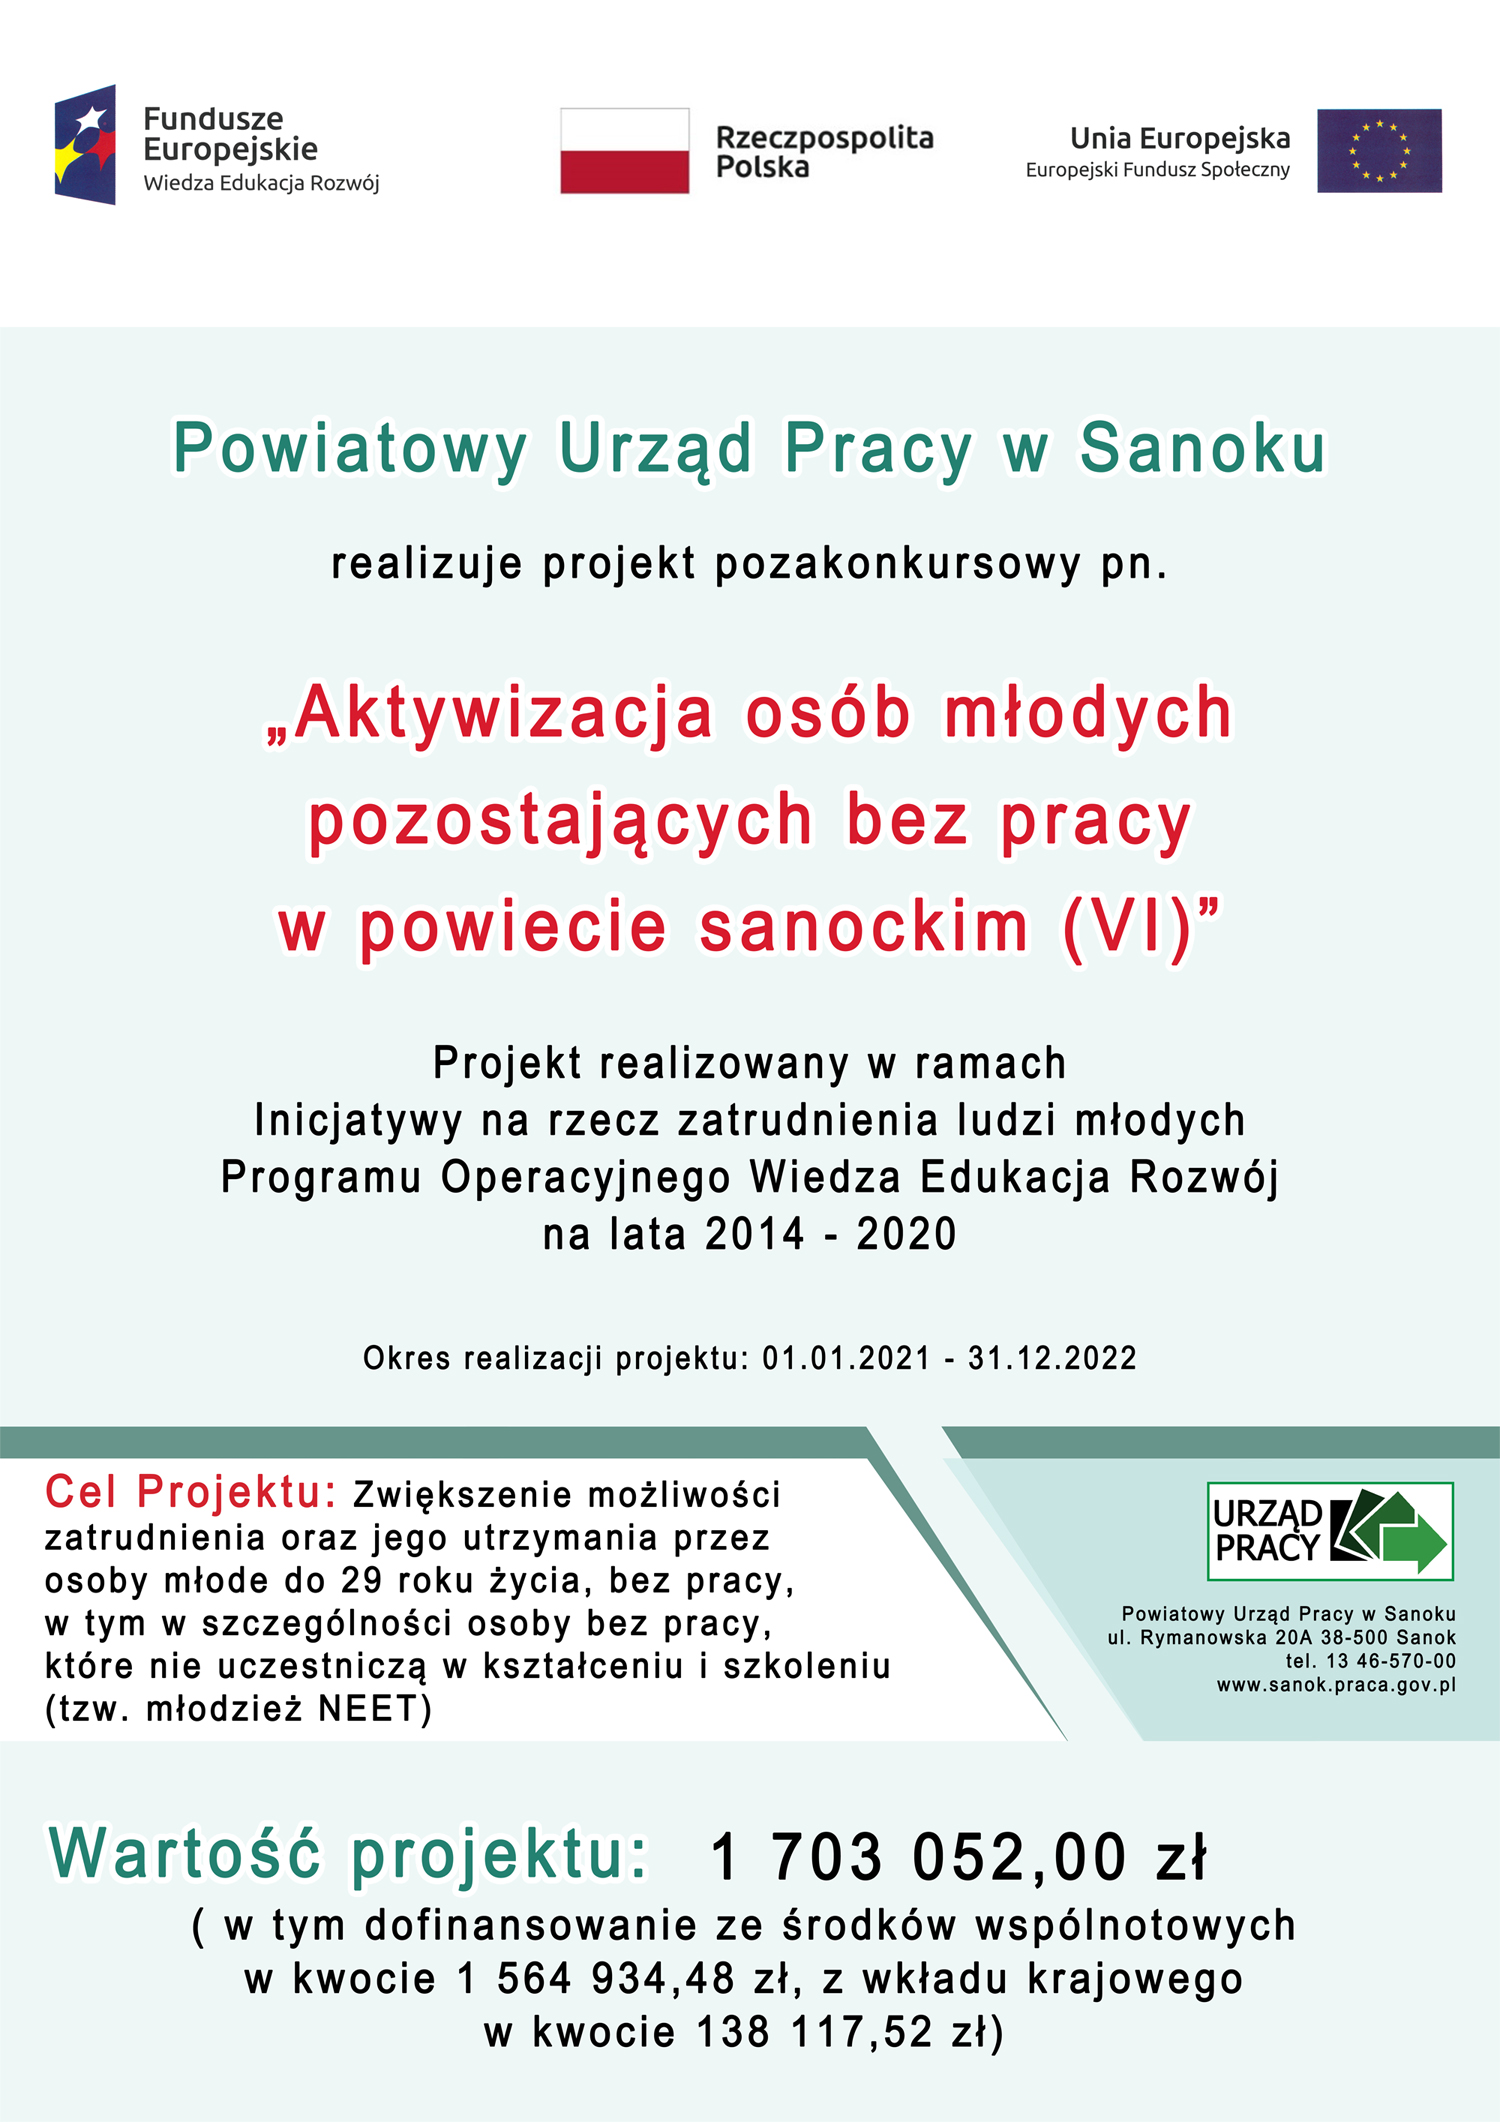 Plakat przedstawia projekt Aktywizacja osób młodych pozostających bez pracy w powiecie sanockim (IV)